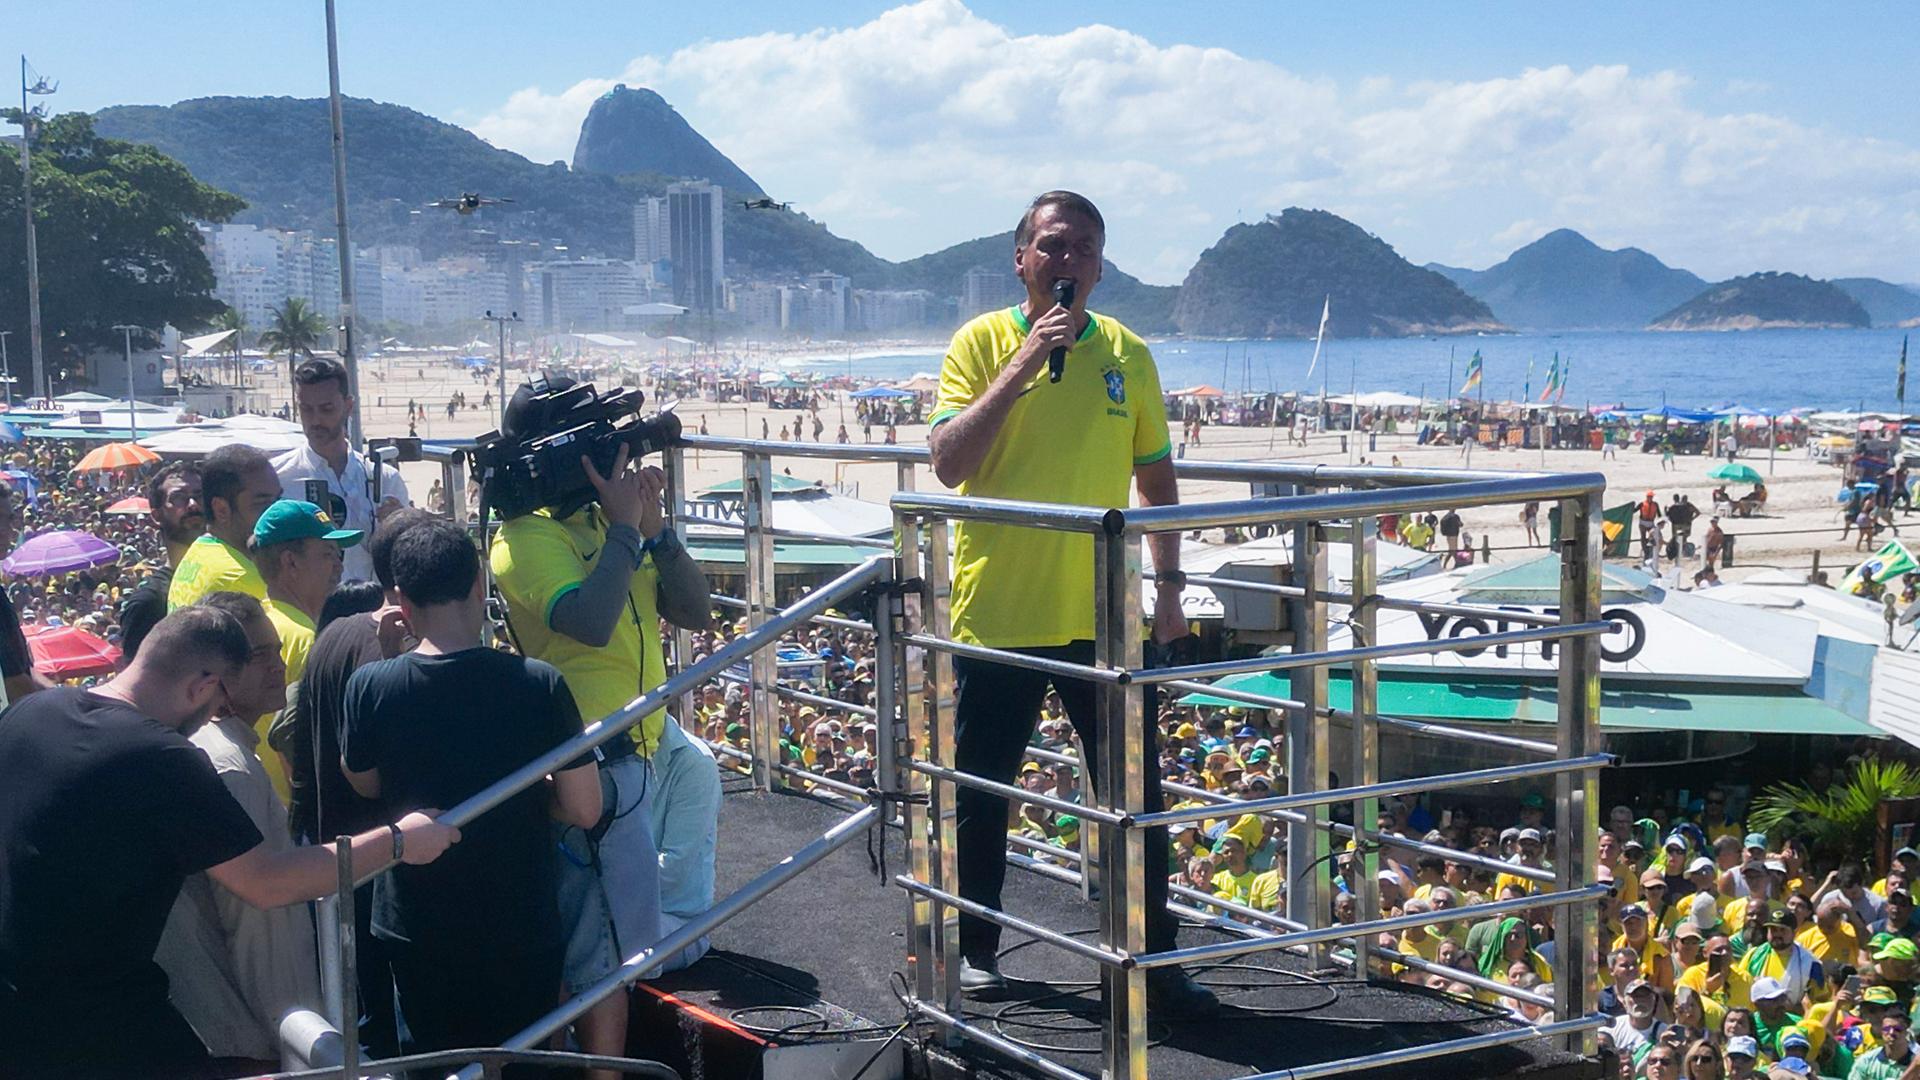 Brasiliens ehemaliger Präsident Jair Bolsonaro steht im gelben T-Shirt auf einem Podest vor Anhängern, die überwiegend gelbe Kleidung tragen. Im Hintergrund sind der berühmte Strand Copacabana sowie die Kulisse des Zuckerbergs zu erkennen.